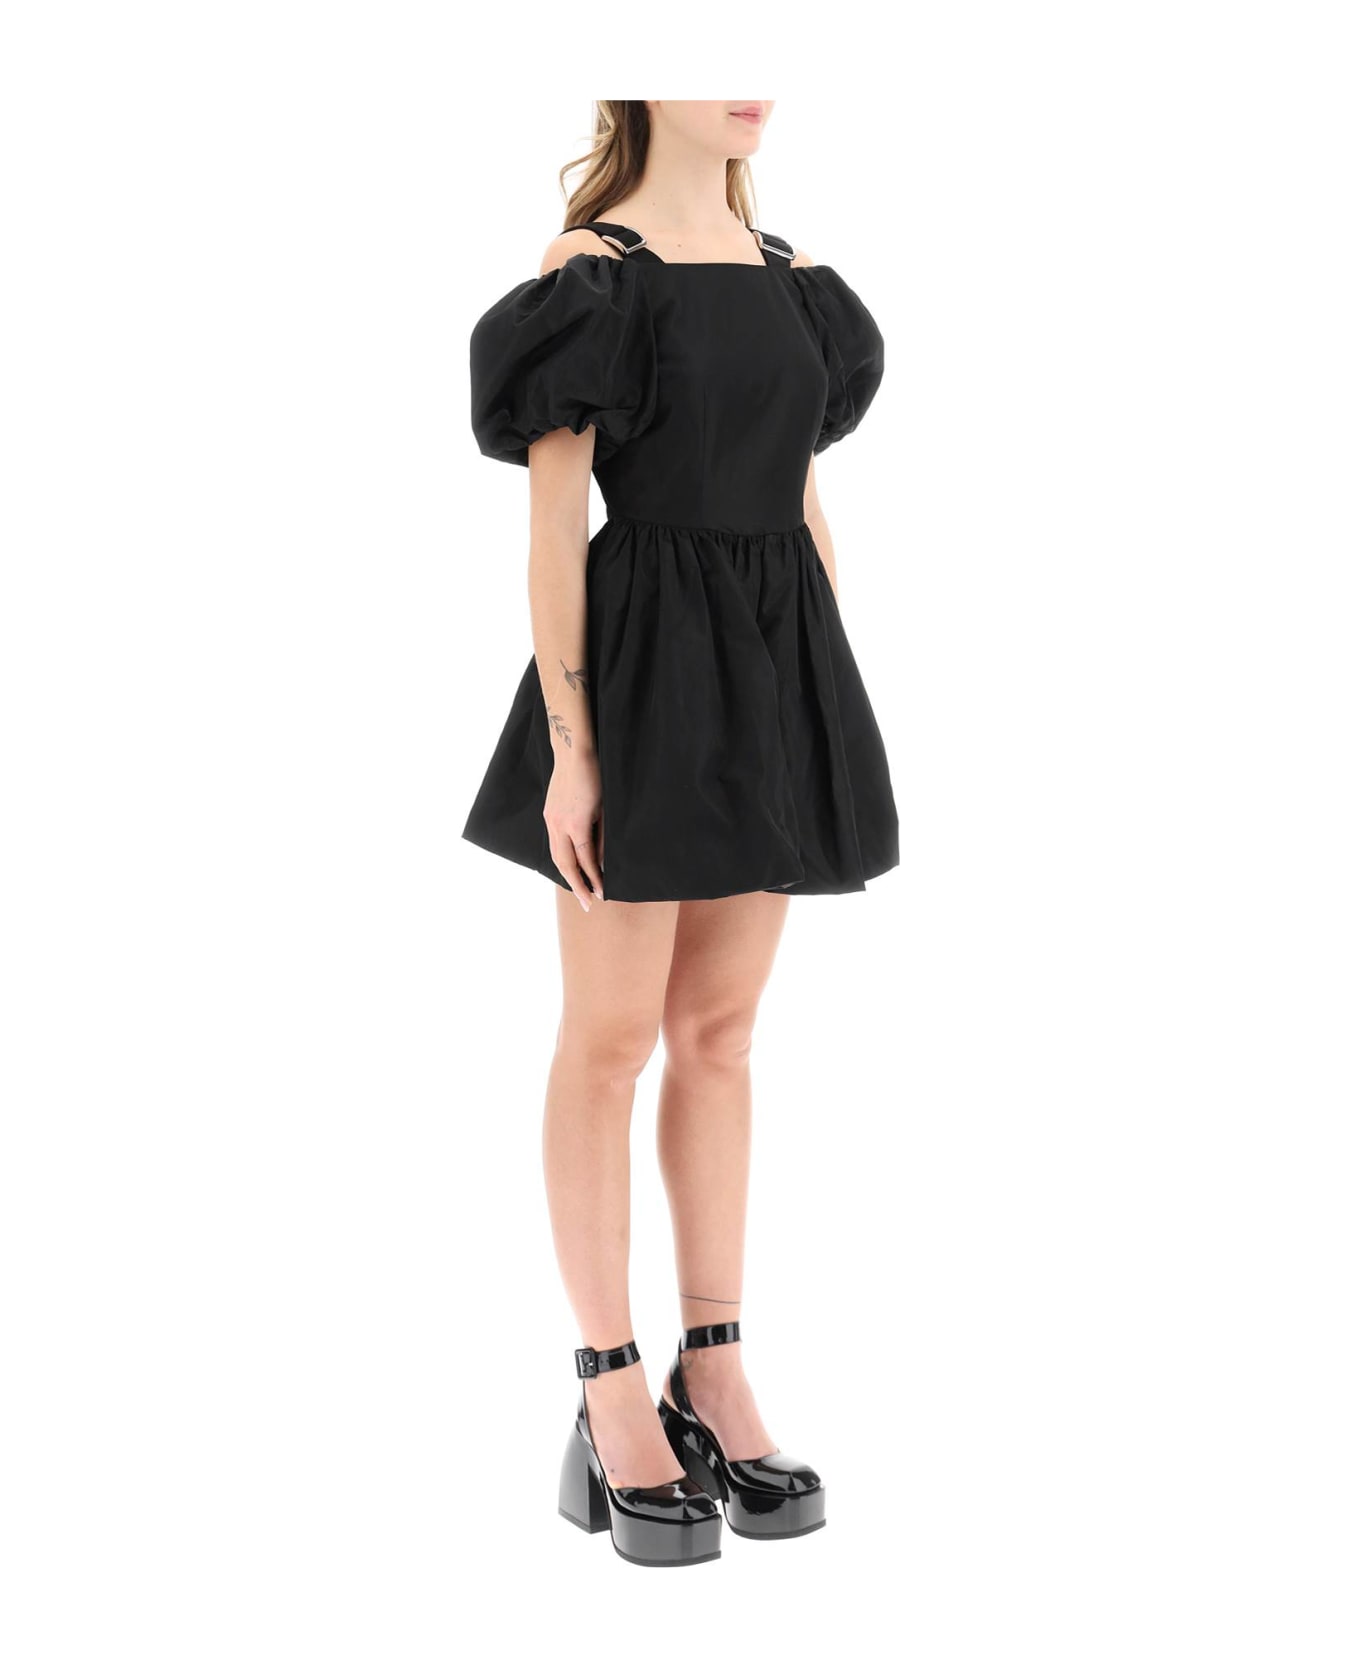 Simone Rocha Off-the-shoulder Taffeta Mini Dress With Slider Straps - Nero